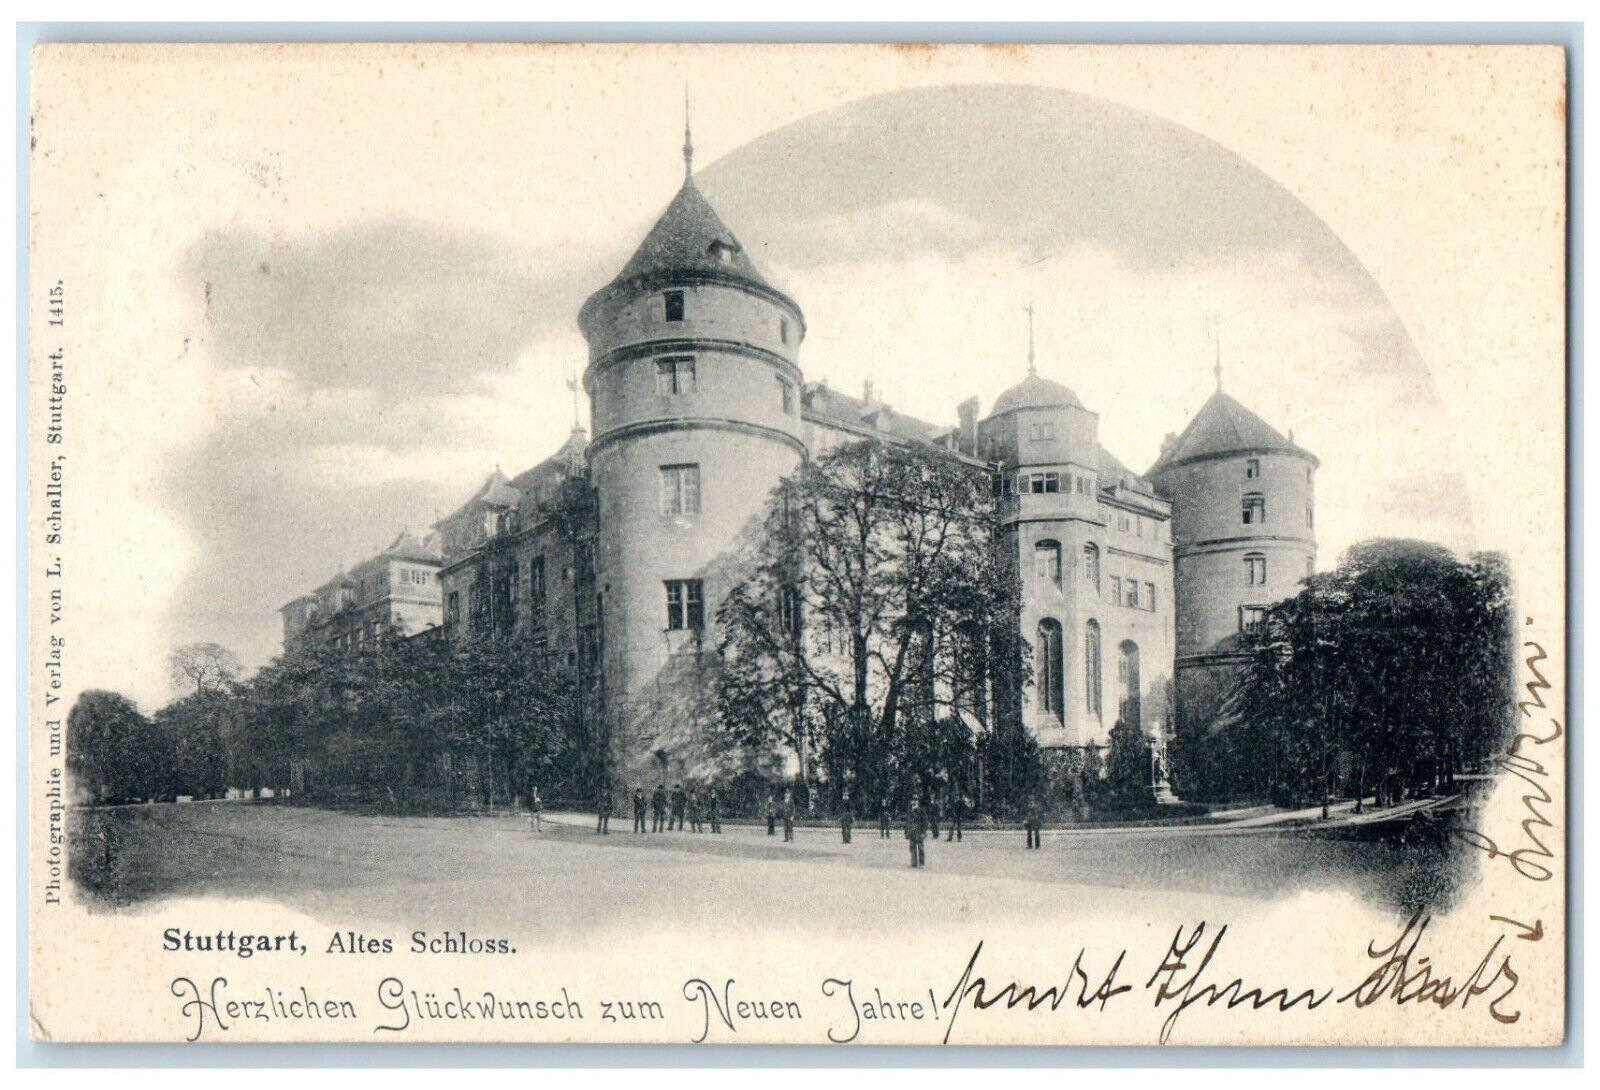 1903 Old Stuttgart Castle Baden-Württemberg Germany Posted Antique Postcard